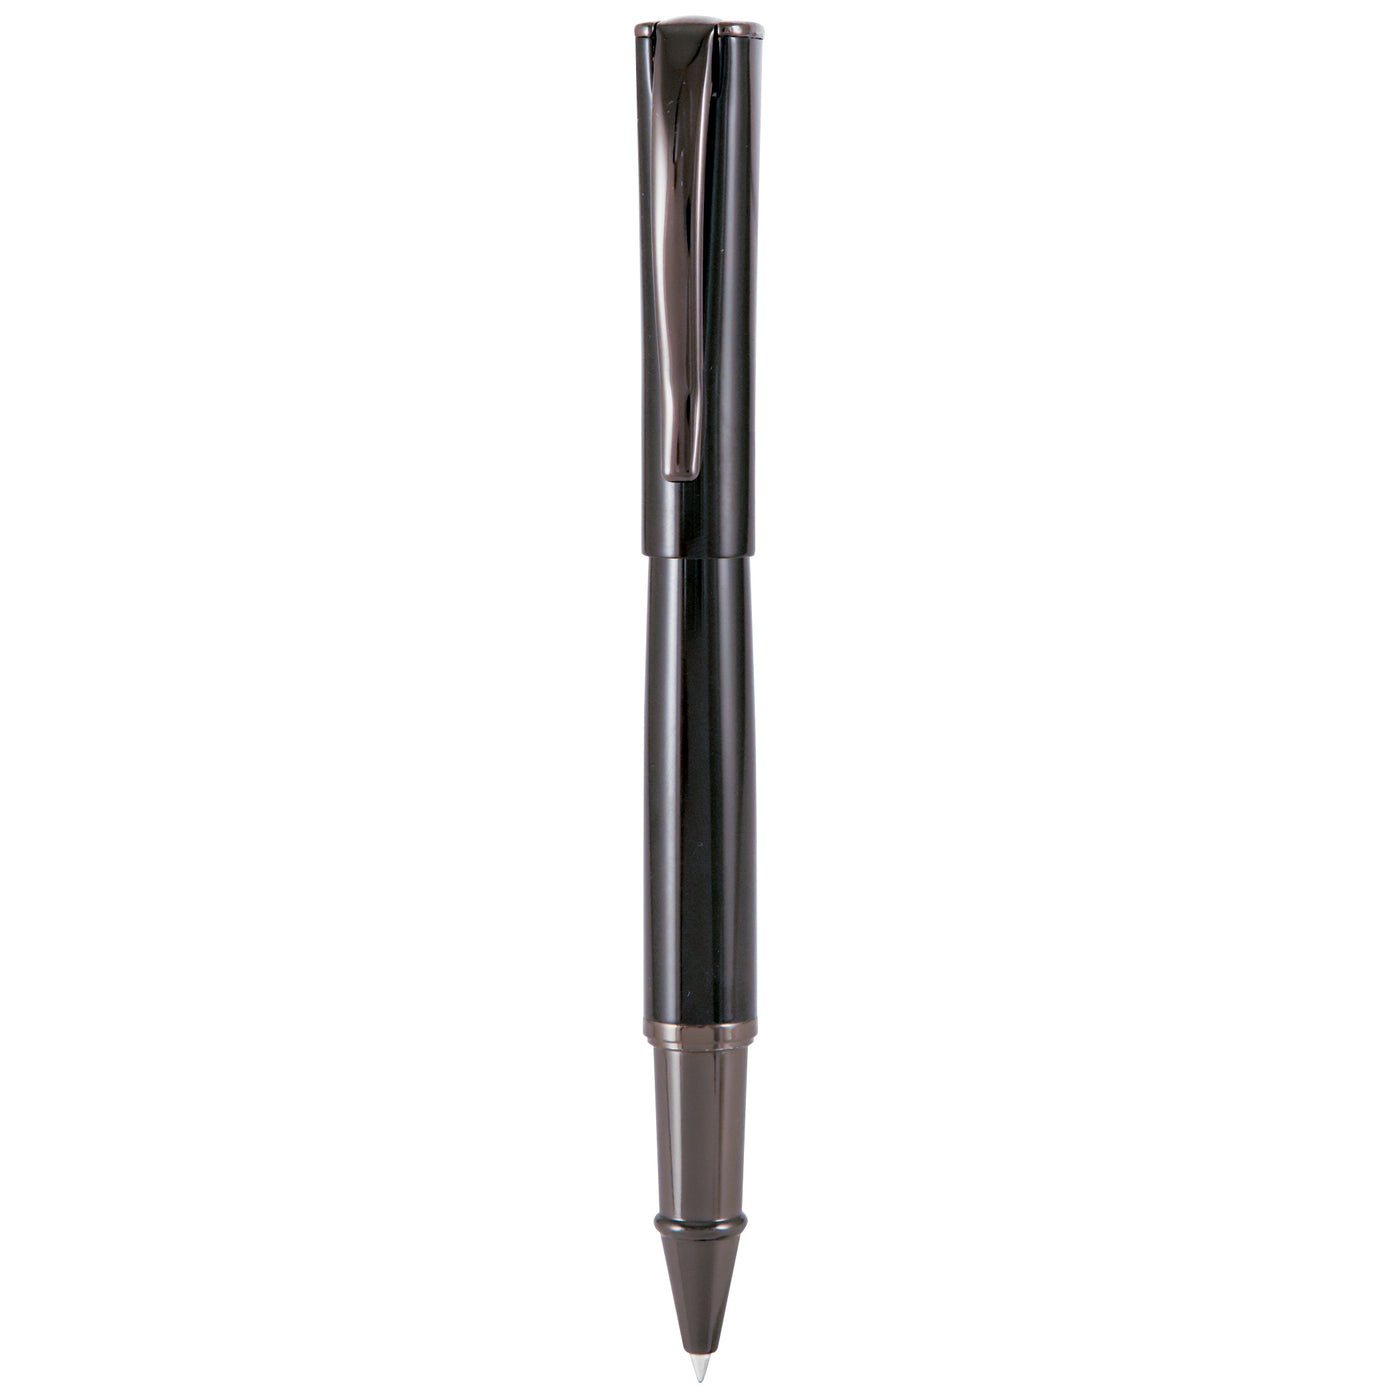 Monteverde Impressa Black Gunmetal Rollerball Pen